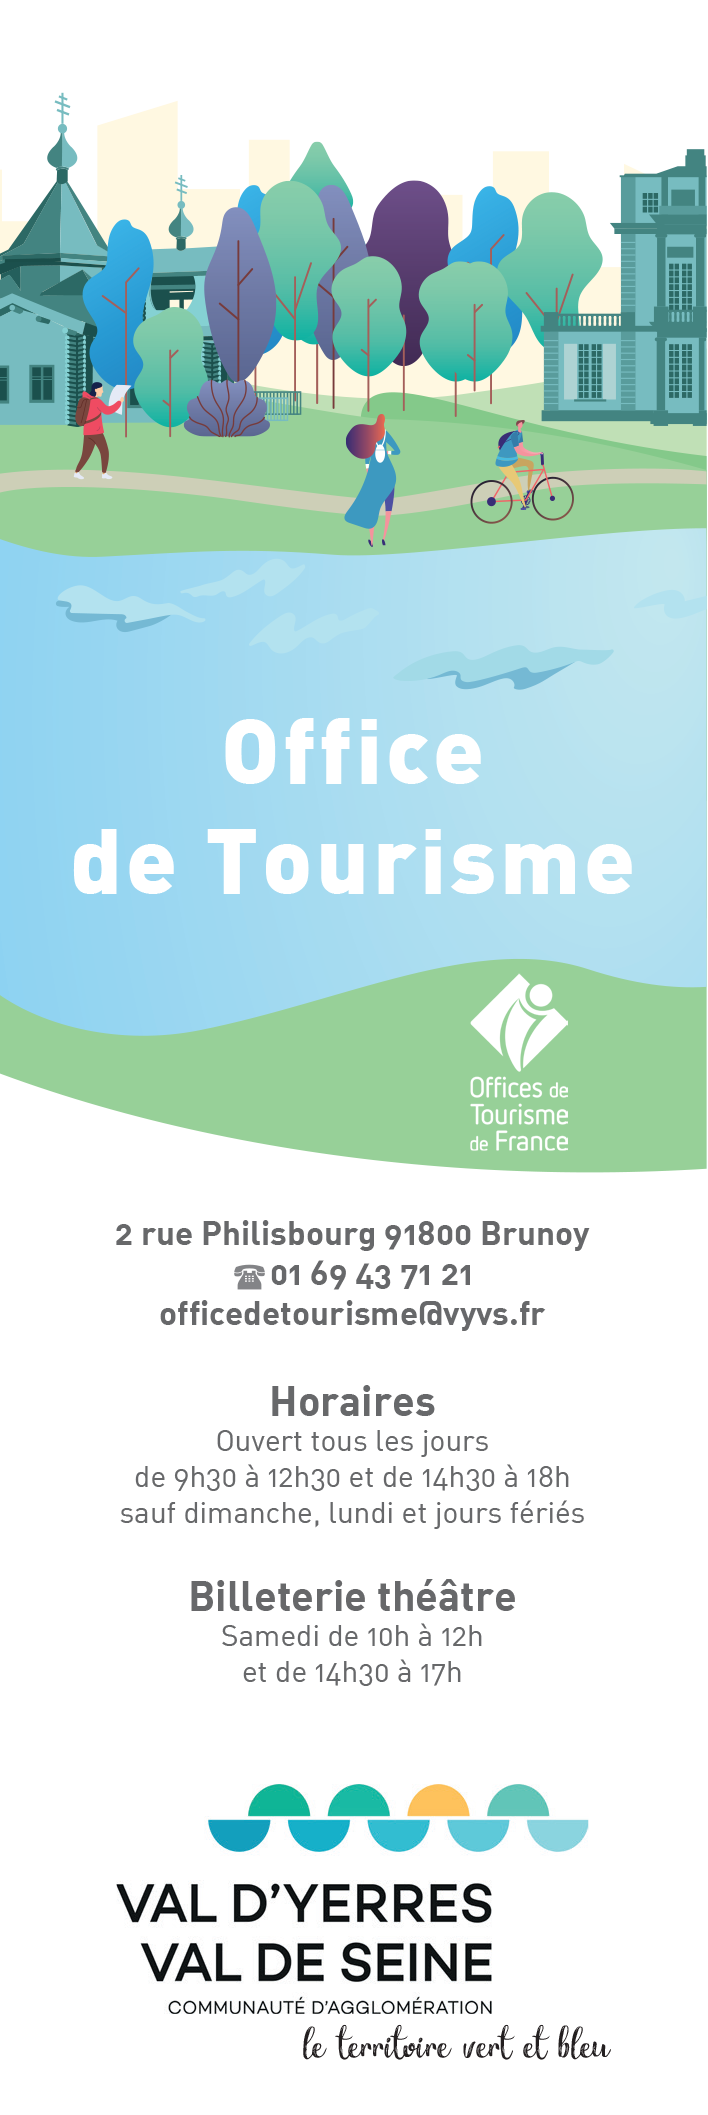 Fabrique ton carnet de voyage ! Communauté d'Agglomération du Val d'Yerres  Val de Seine